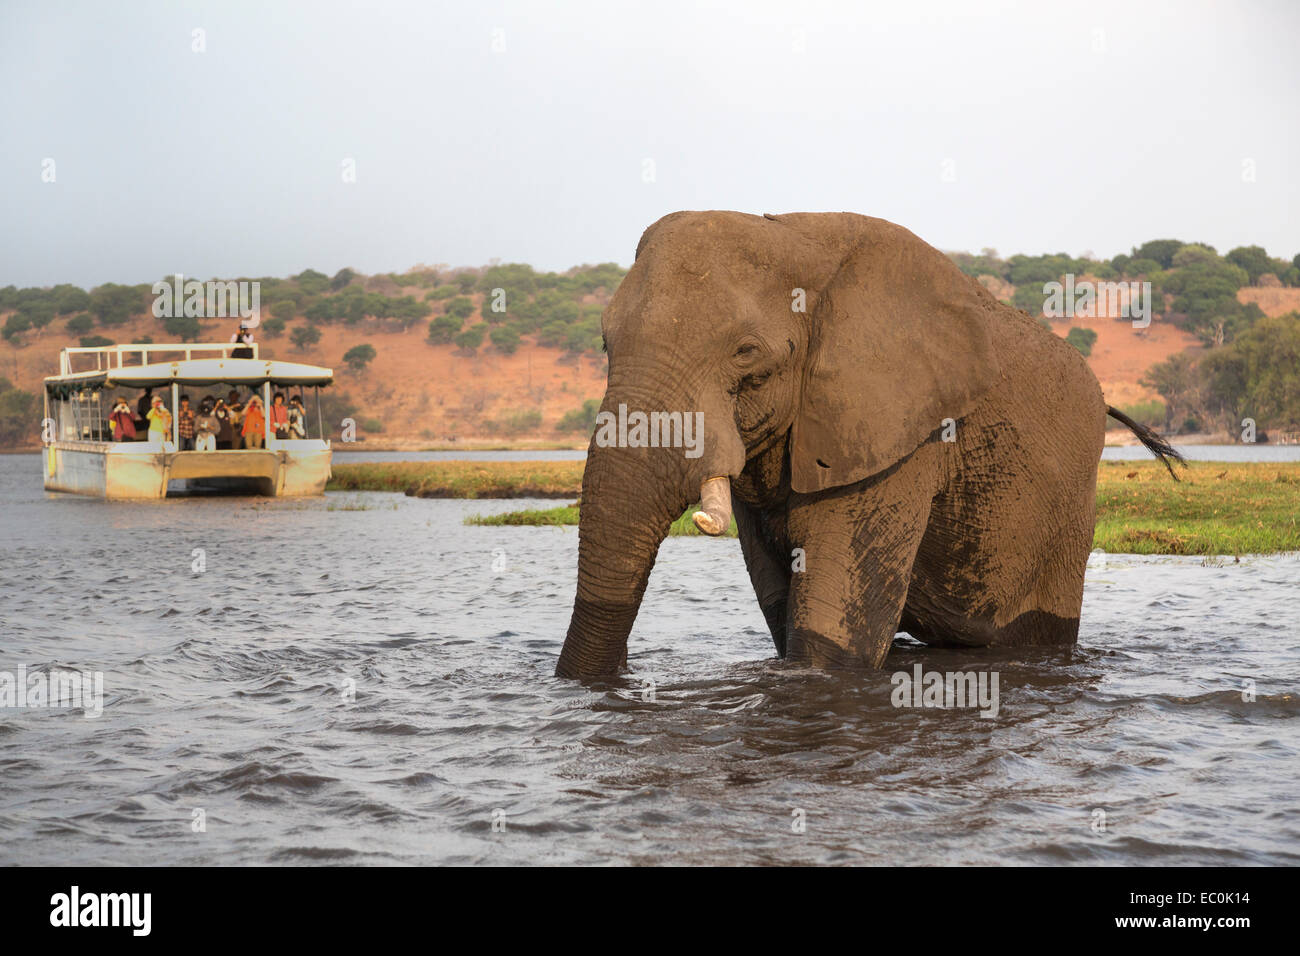 Elefante africano (Loxodonta africana) y los turistas, el Parque Nacional Chobe, Botswana Foto de stock